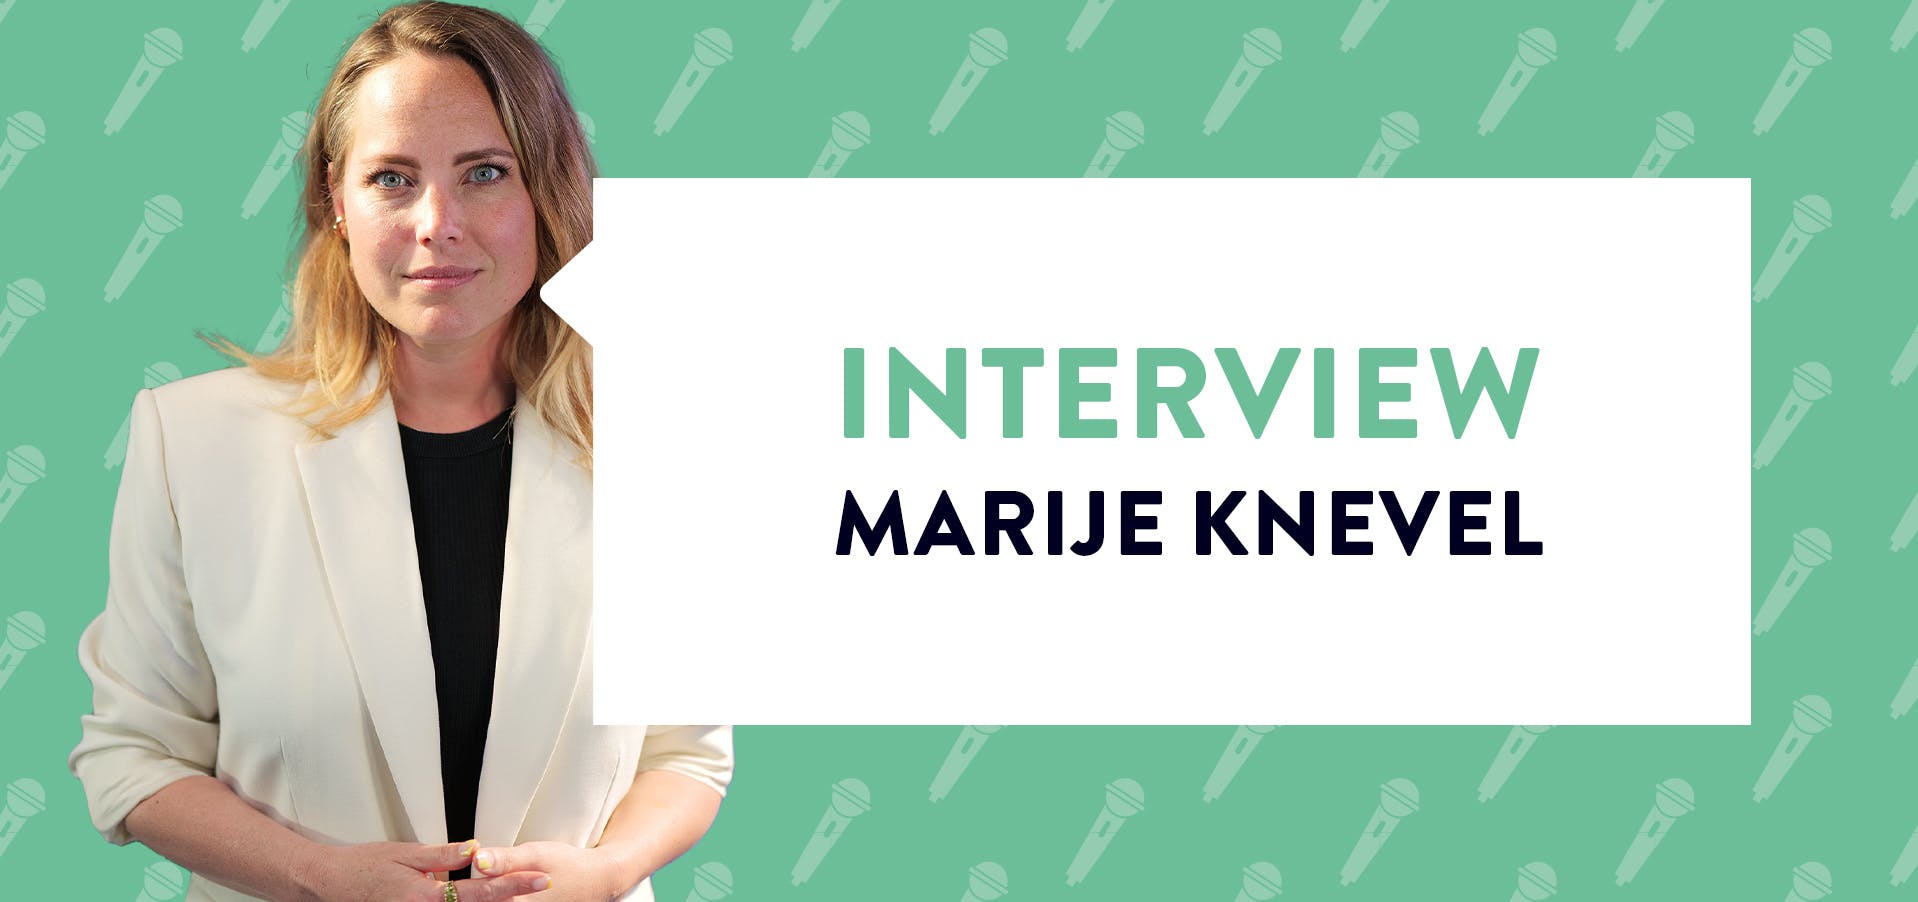 Marije Knevel met banner interview